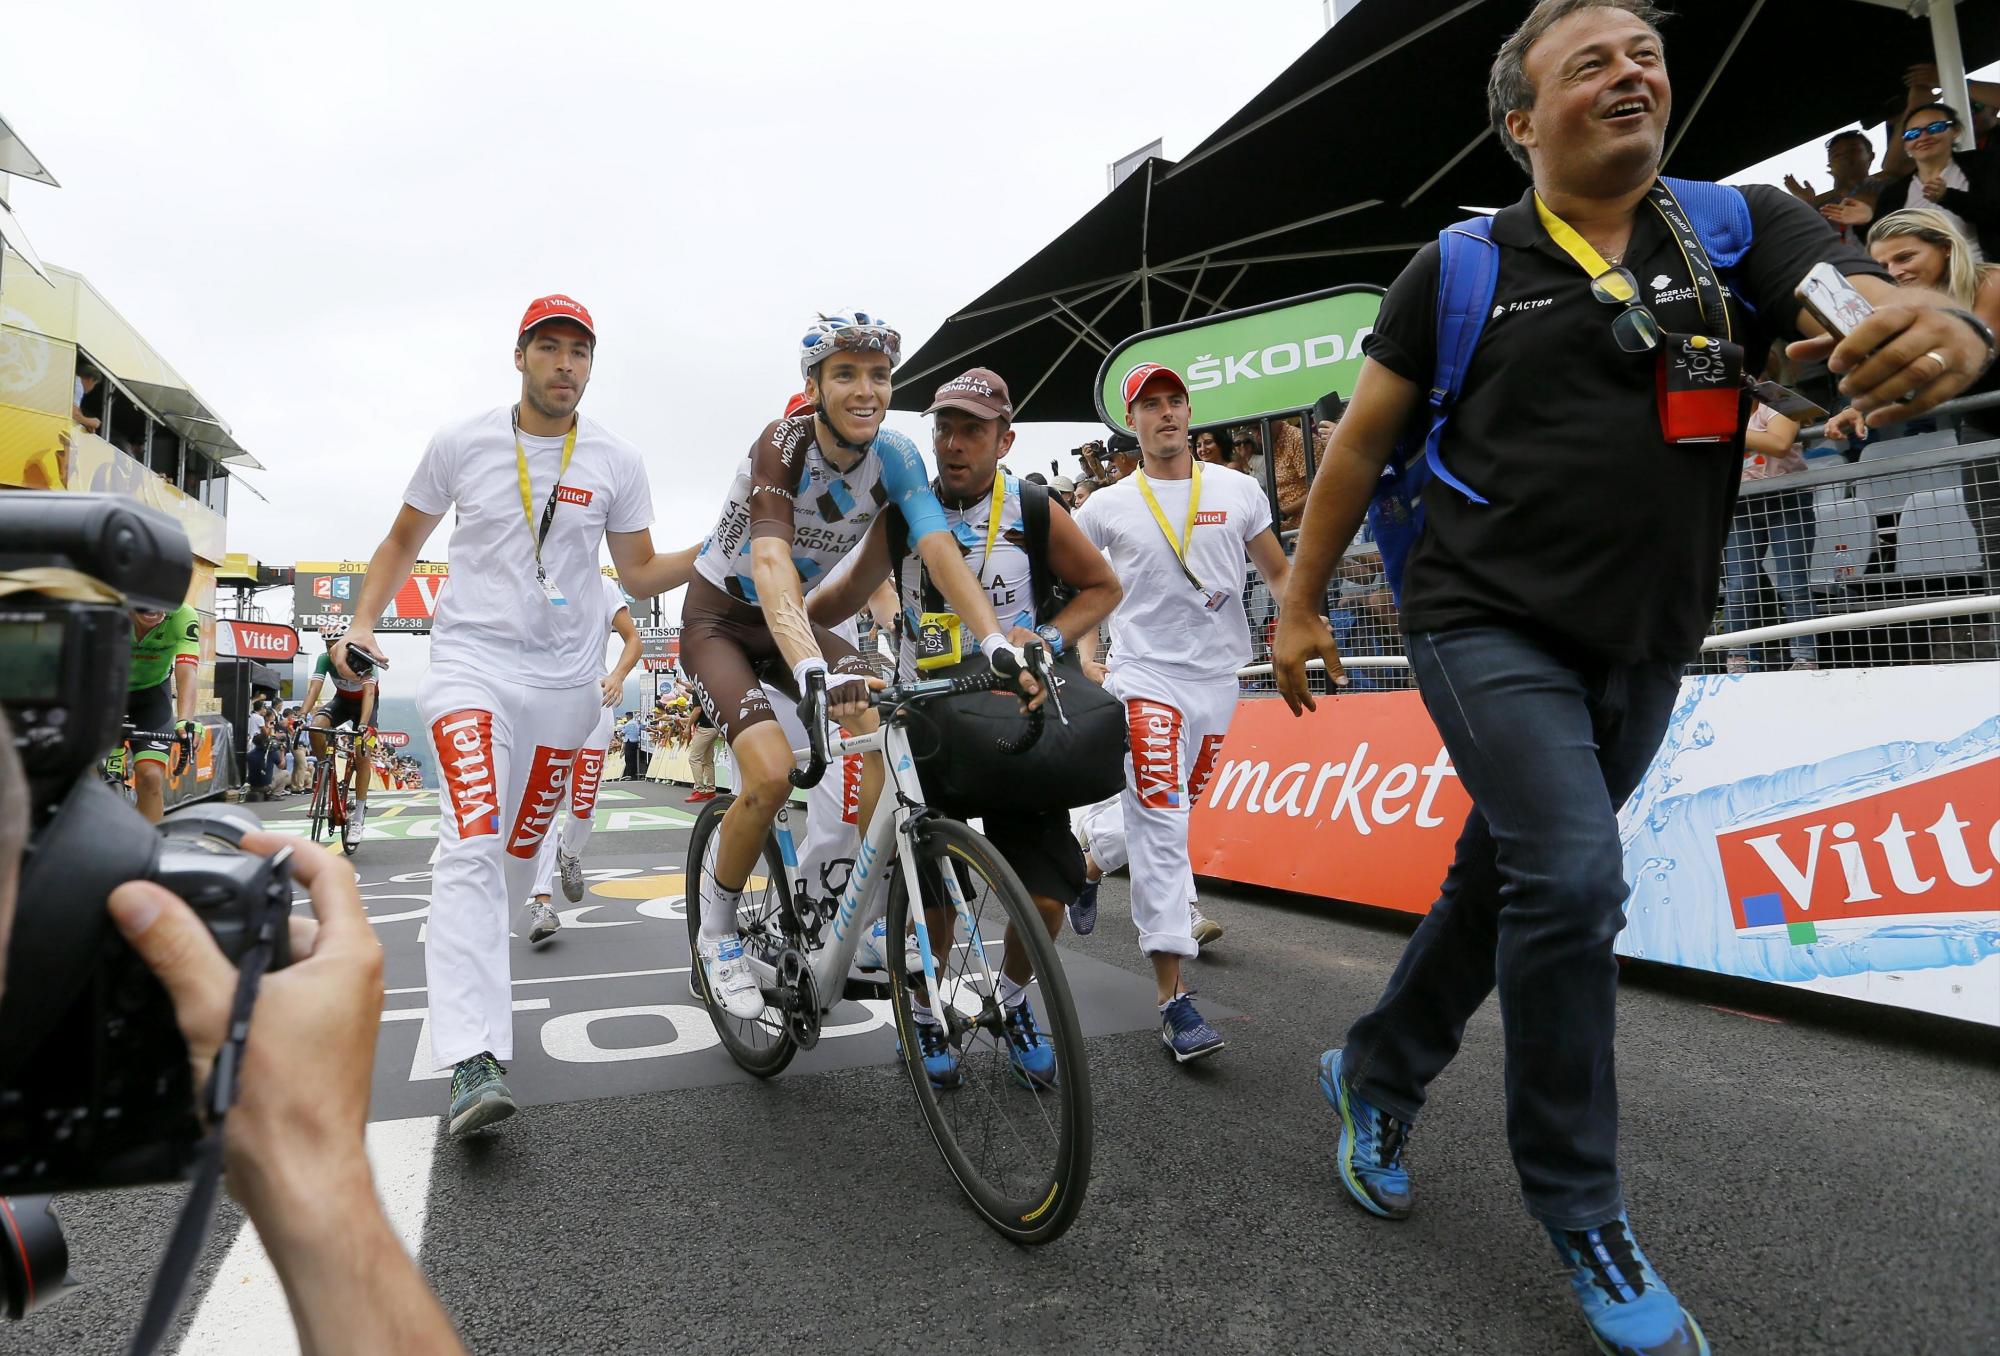 El ciclista francés Romain Bardet del AG2R La Mondiale tras su victoria tras la duodécima etapa del Tour de Francia, de 214,5 km, entre las localidades de Pau y Peyragudes (Francia), hoy 13 de julio de 2017. Bardet va de tercero en el liderato general individual.